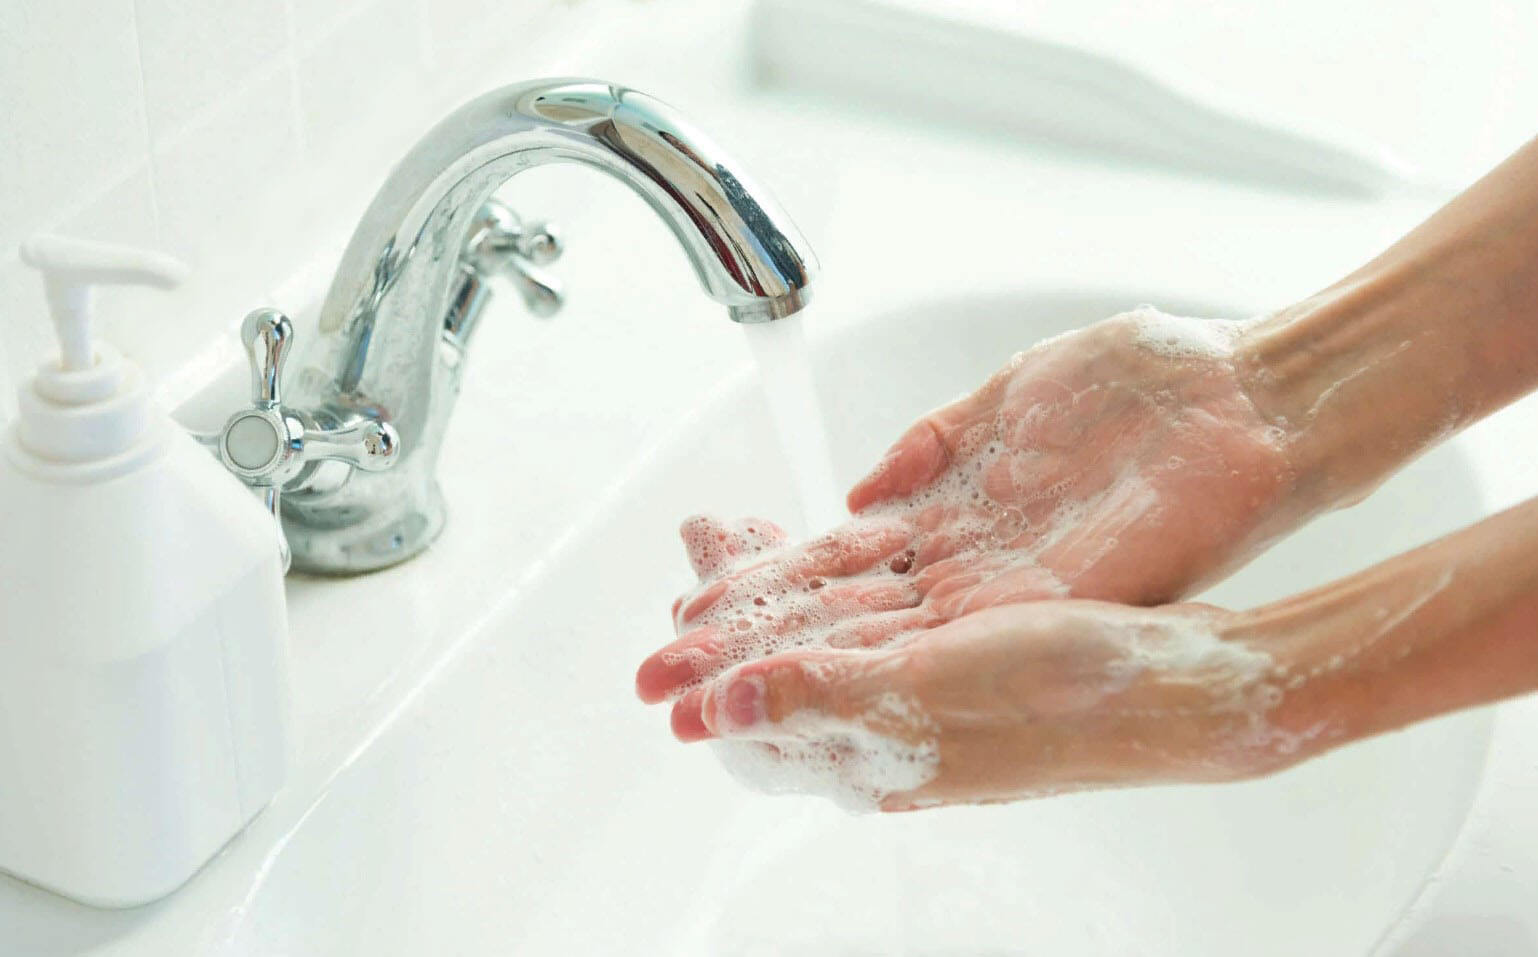 Comment fonctionne le gel antibactérien pour les mains?